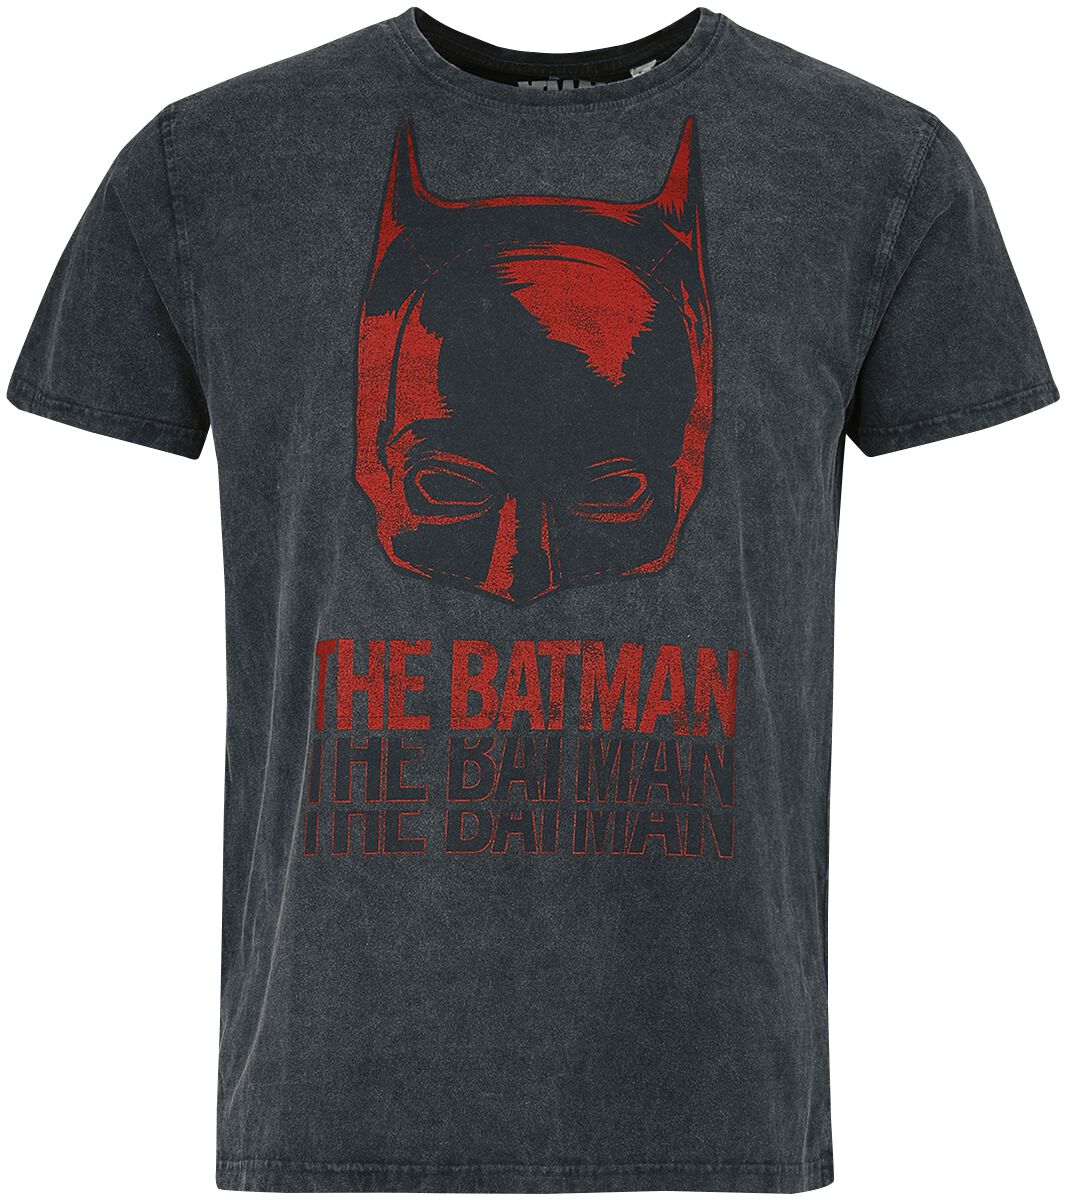 Batman - DC Comics T-Shirt - The Batman - Mask - S bis XXL - für Männer - Größe XXL - schwarz  - Lizenzierter Fanartikel von Batman